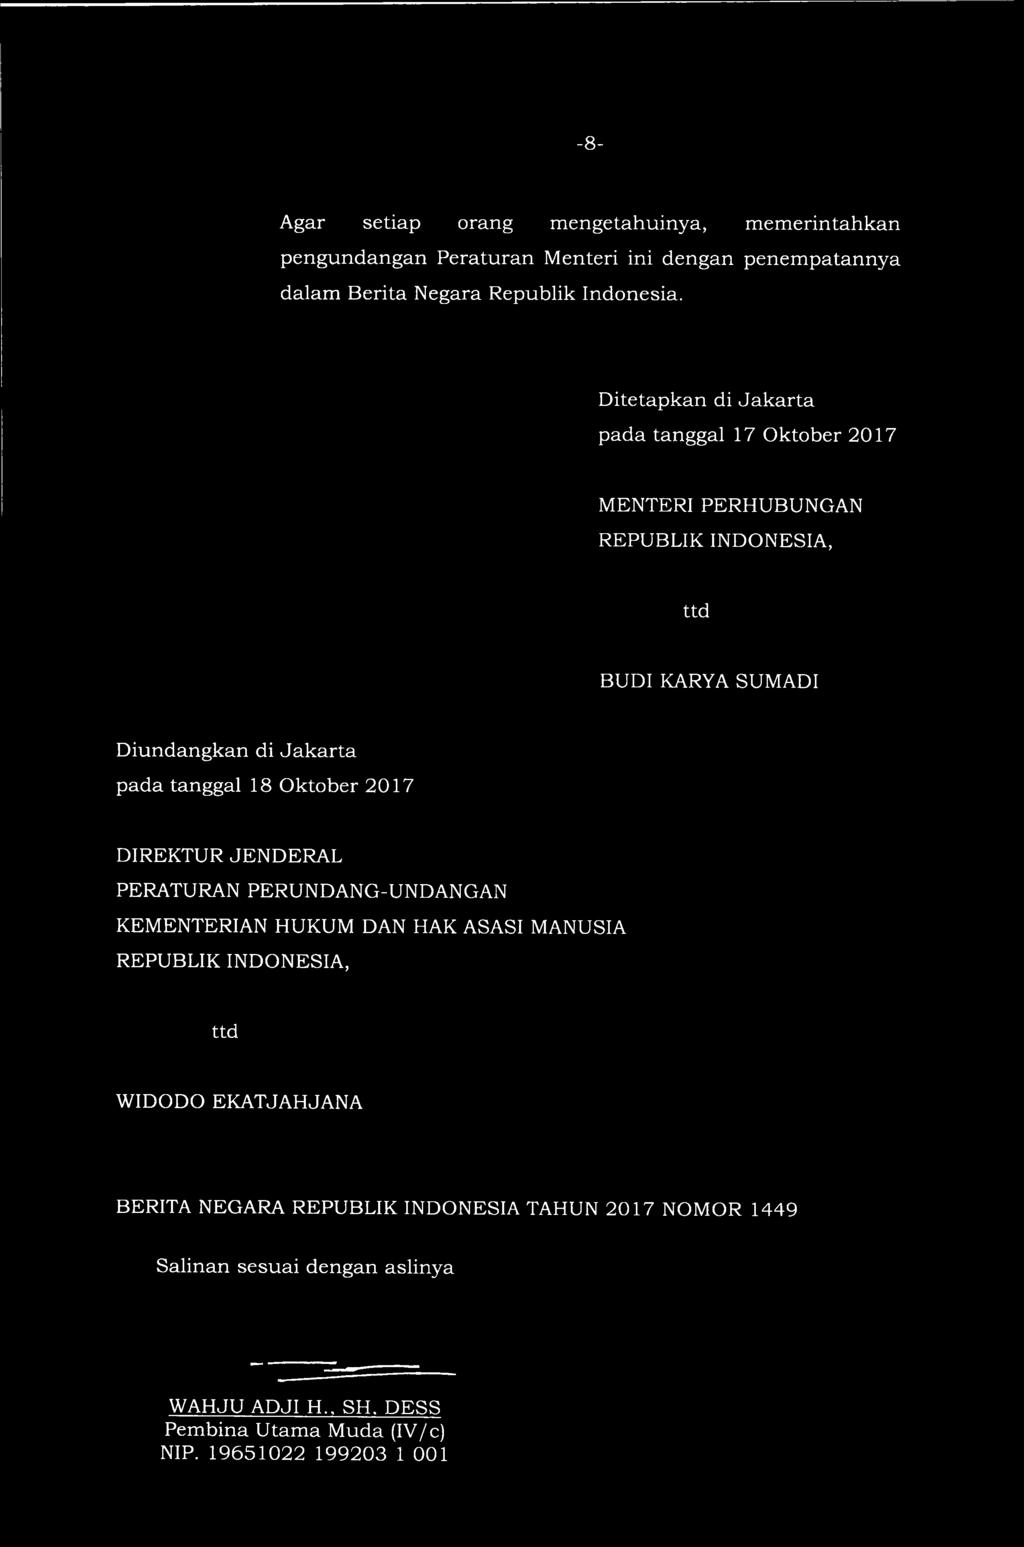 Ditetapkan di Jakarta pada tanggal 17 Oktober 2017 MENTERI PERHUBUNGAN REPUBLIK INDONESIA, ttd BUDI